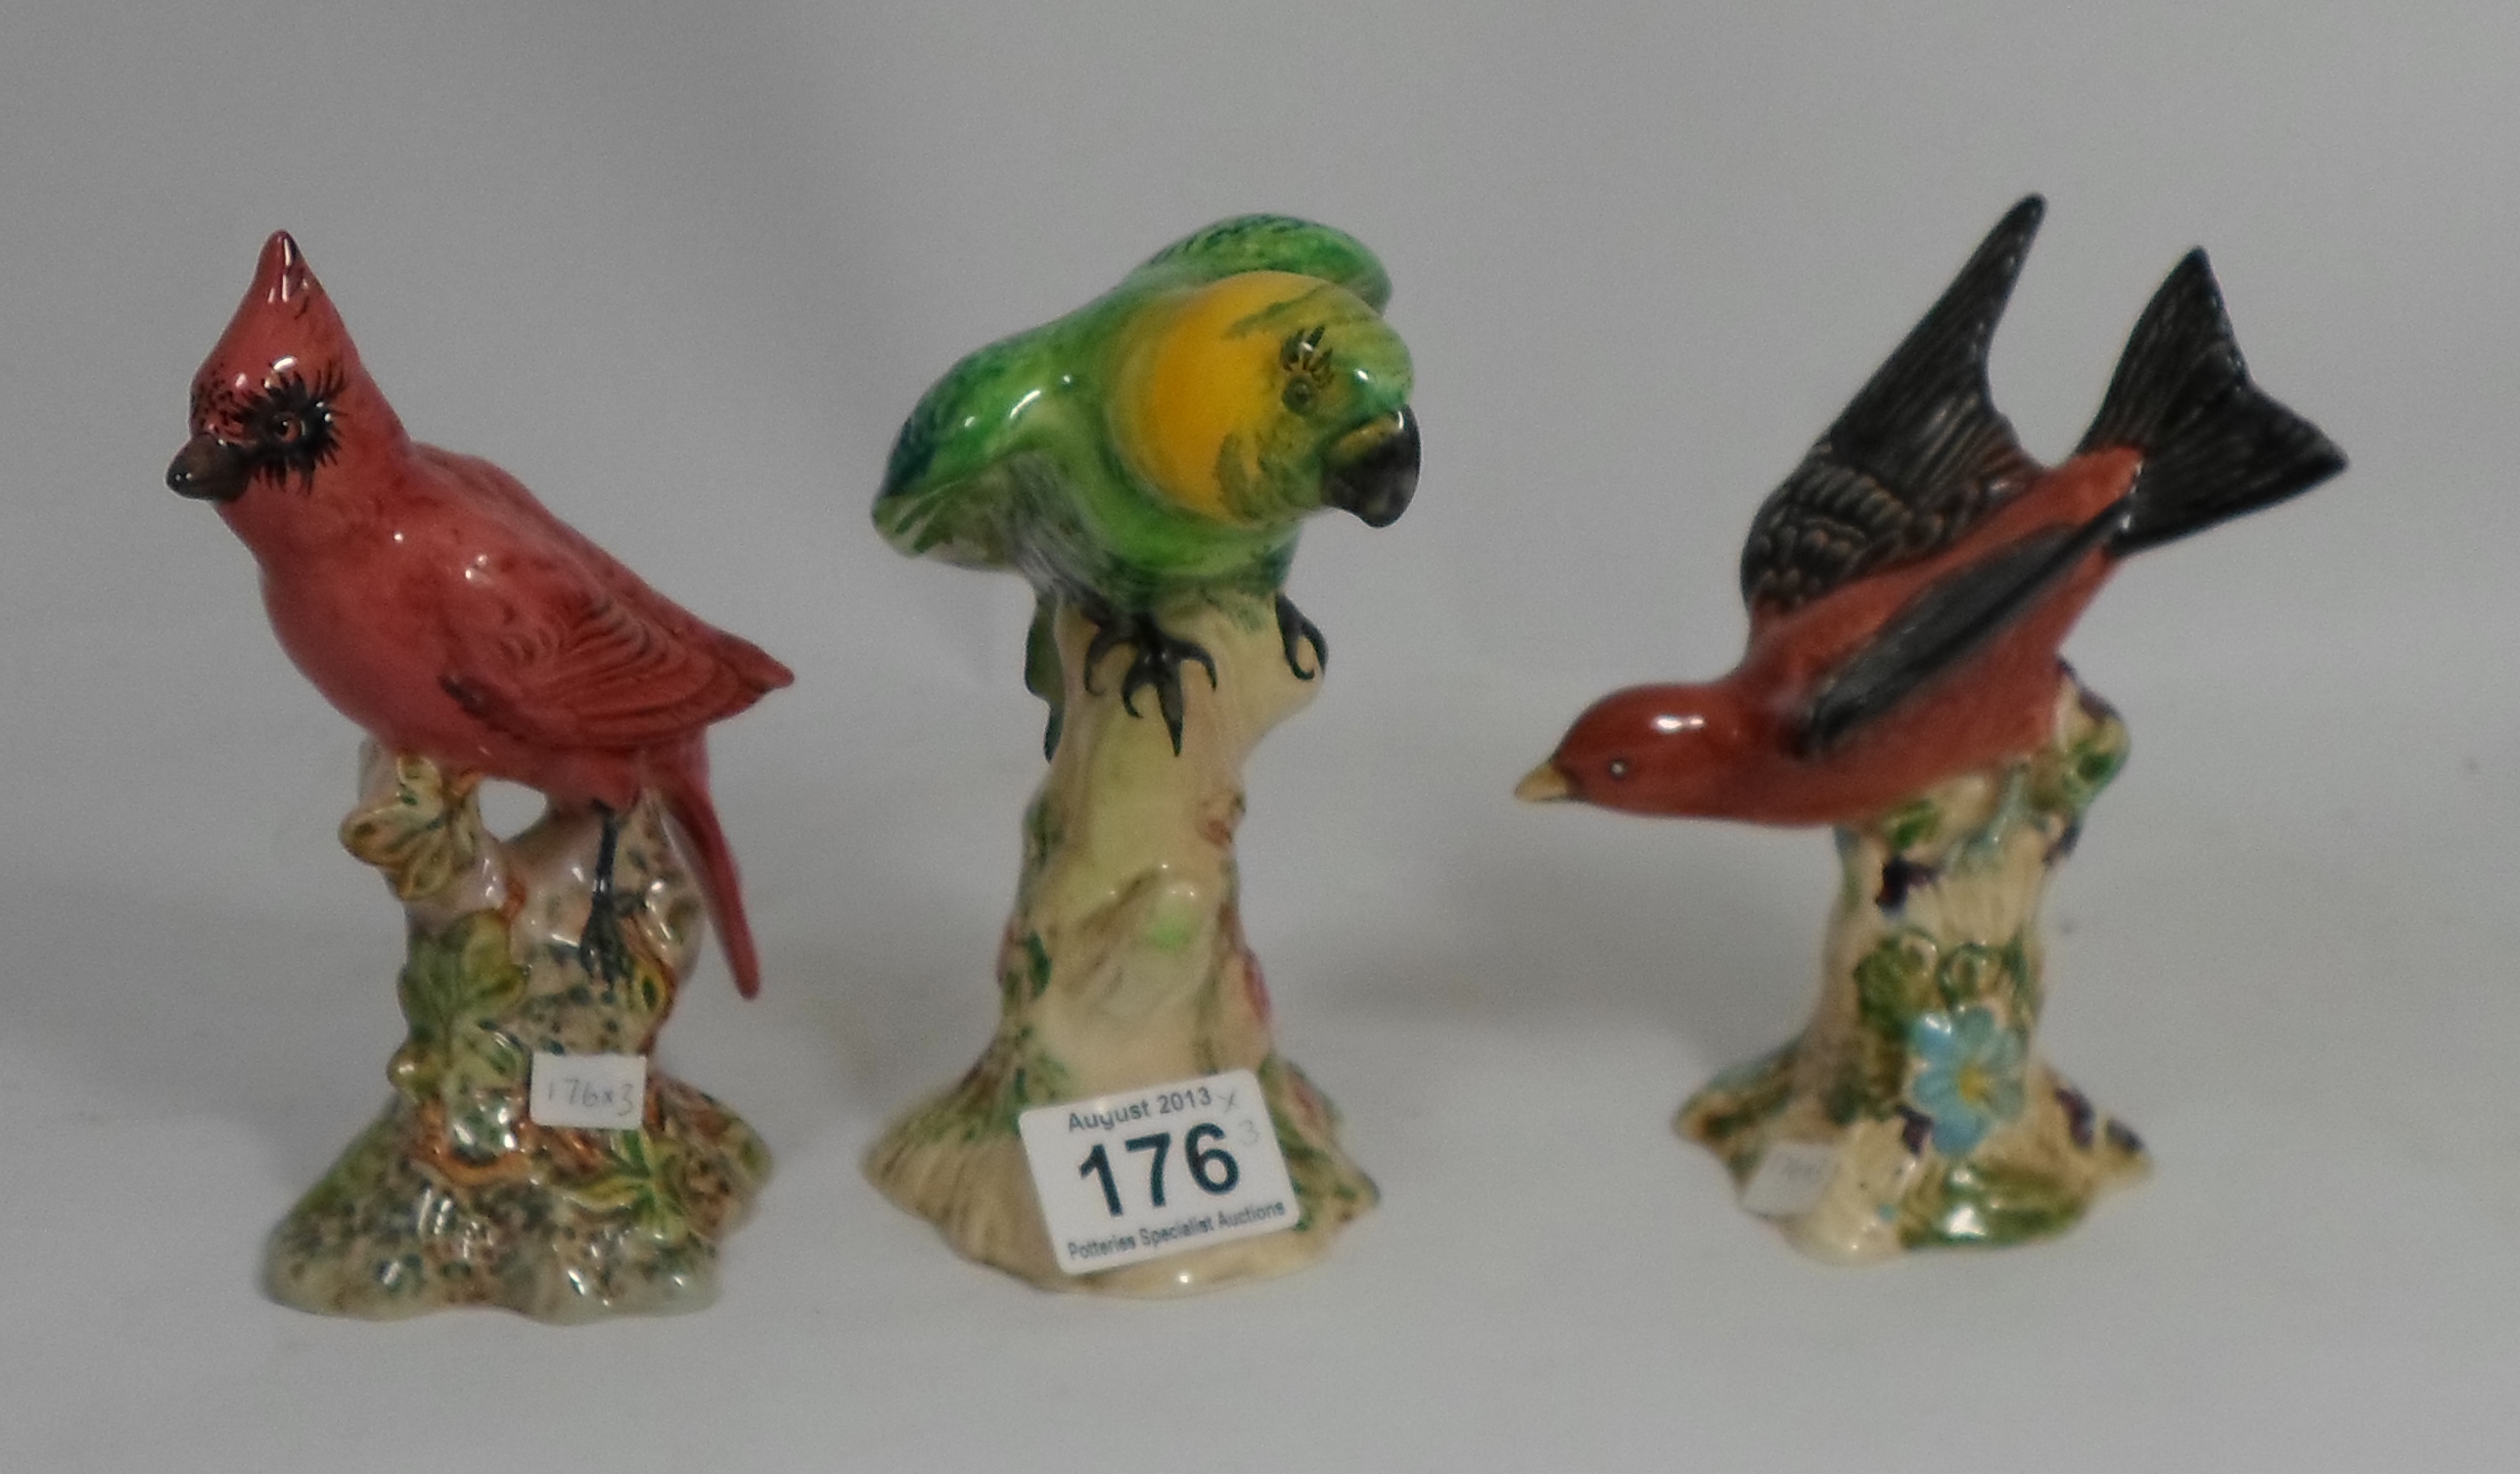 Beswick Model of a Parakeet 930, Cardinal 927 and a Tanager Bird 927 (Tanager restored (3)